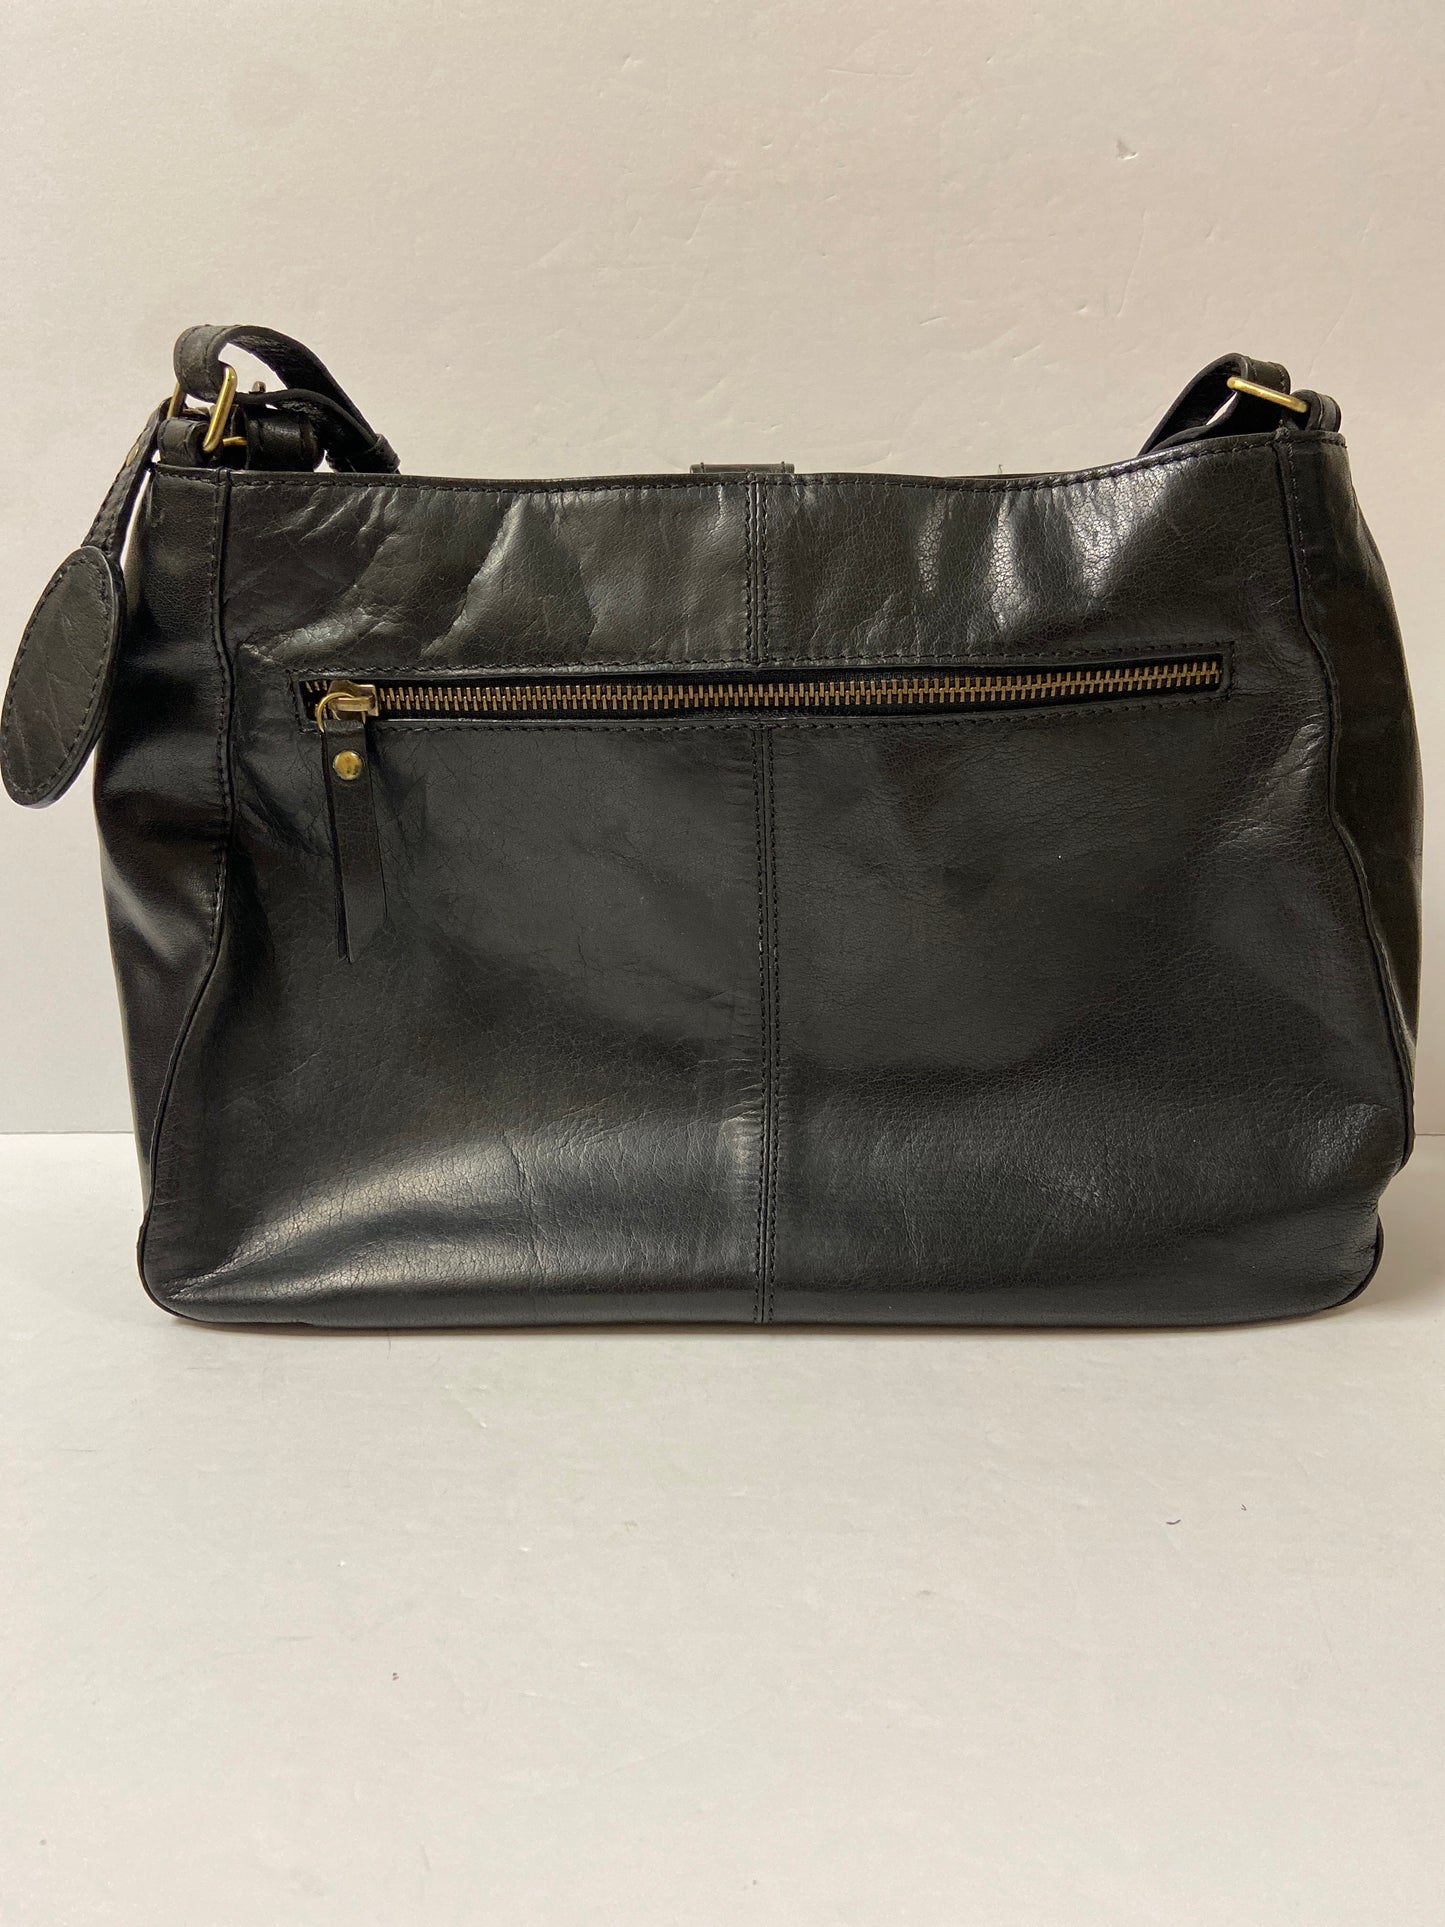 Handbag Designer By Born  Size: Medium